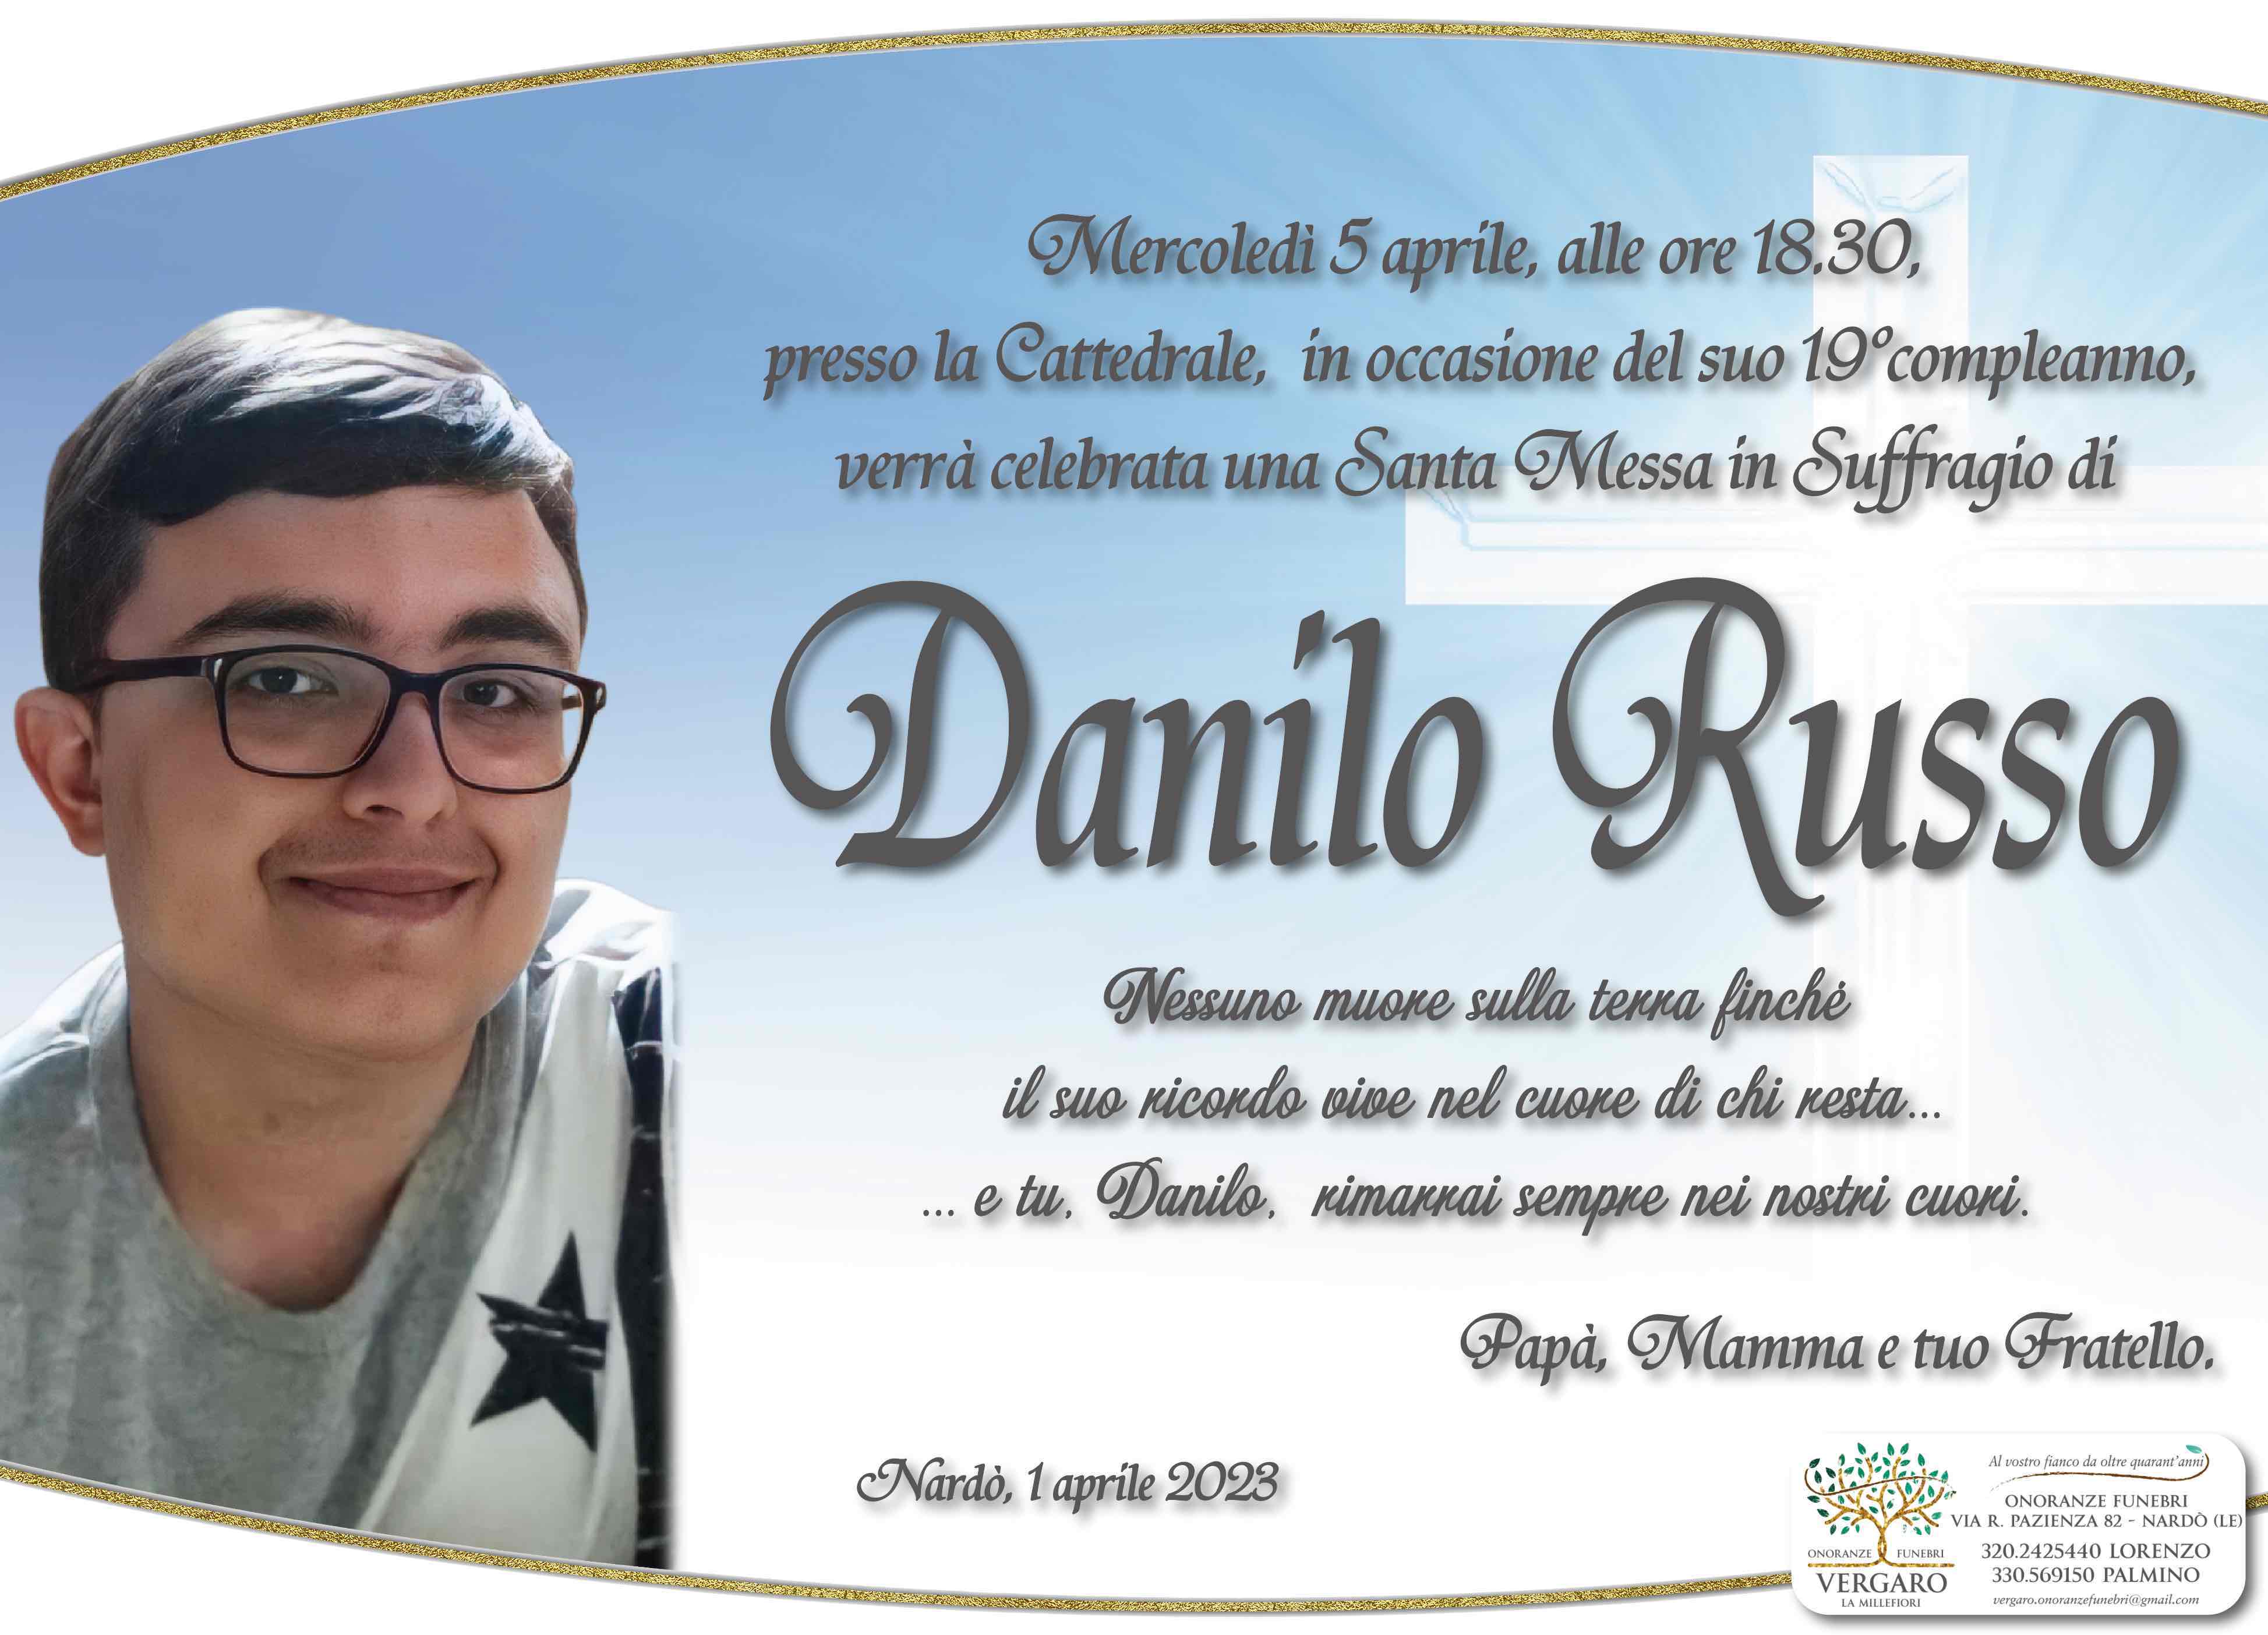 Danilo Russo